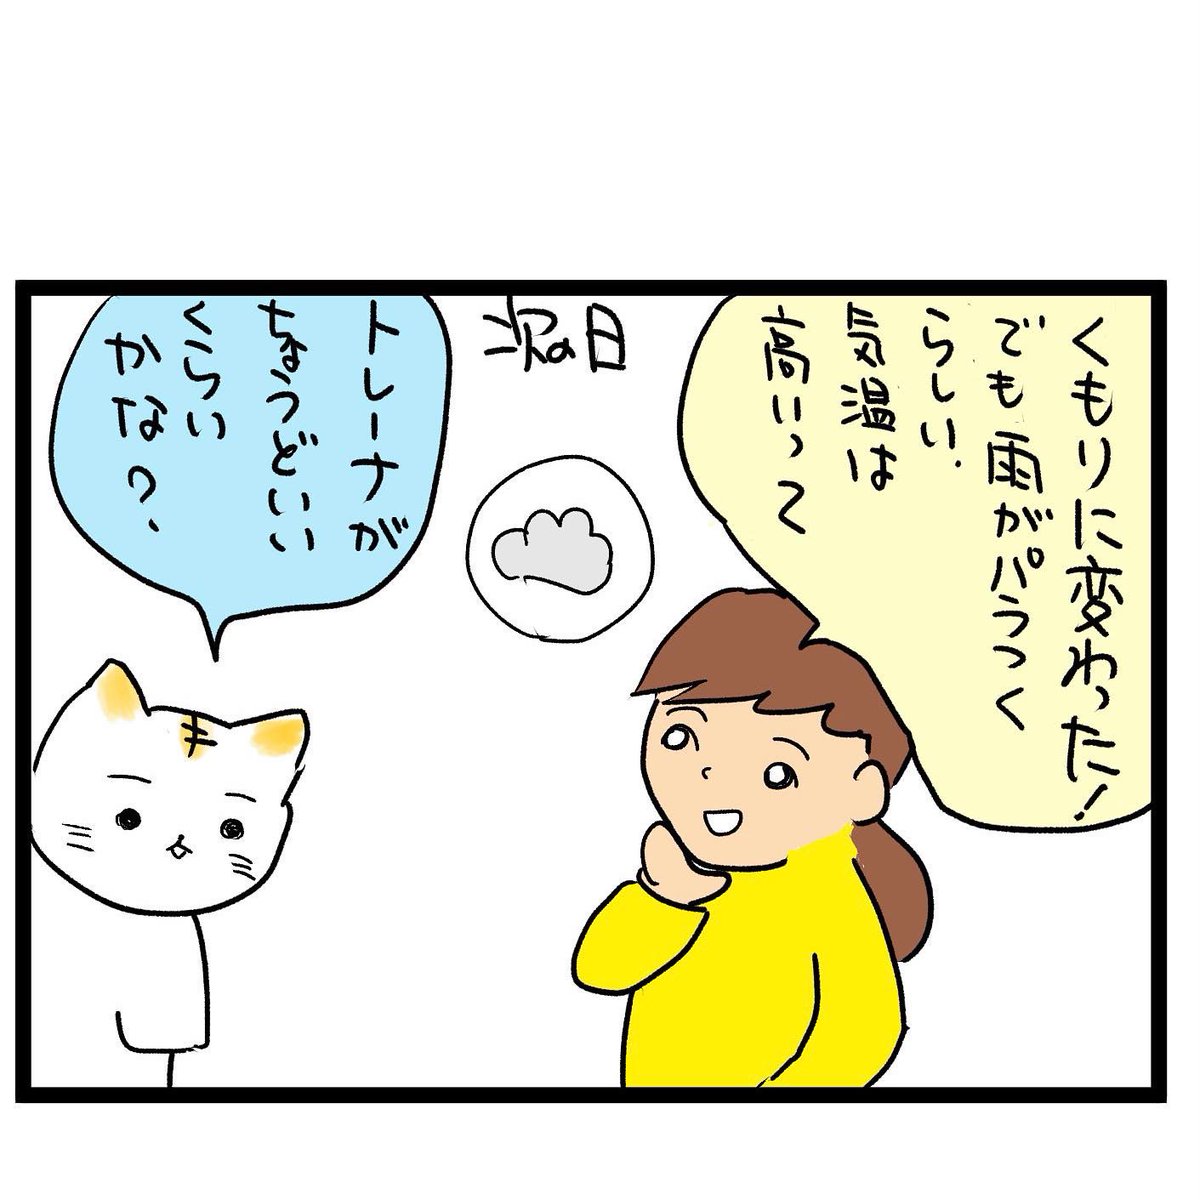 #四コマ漫画
天気予報 